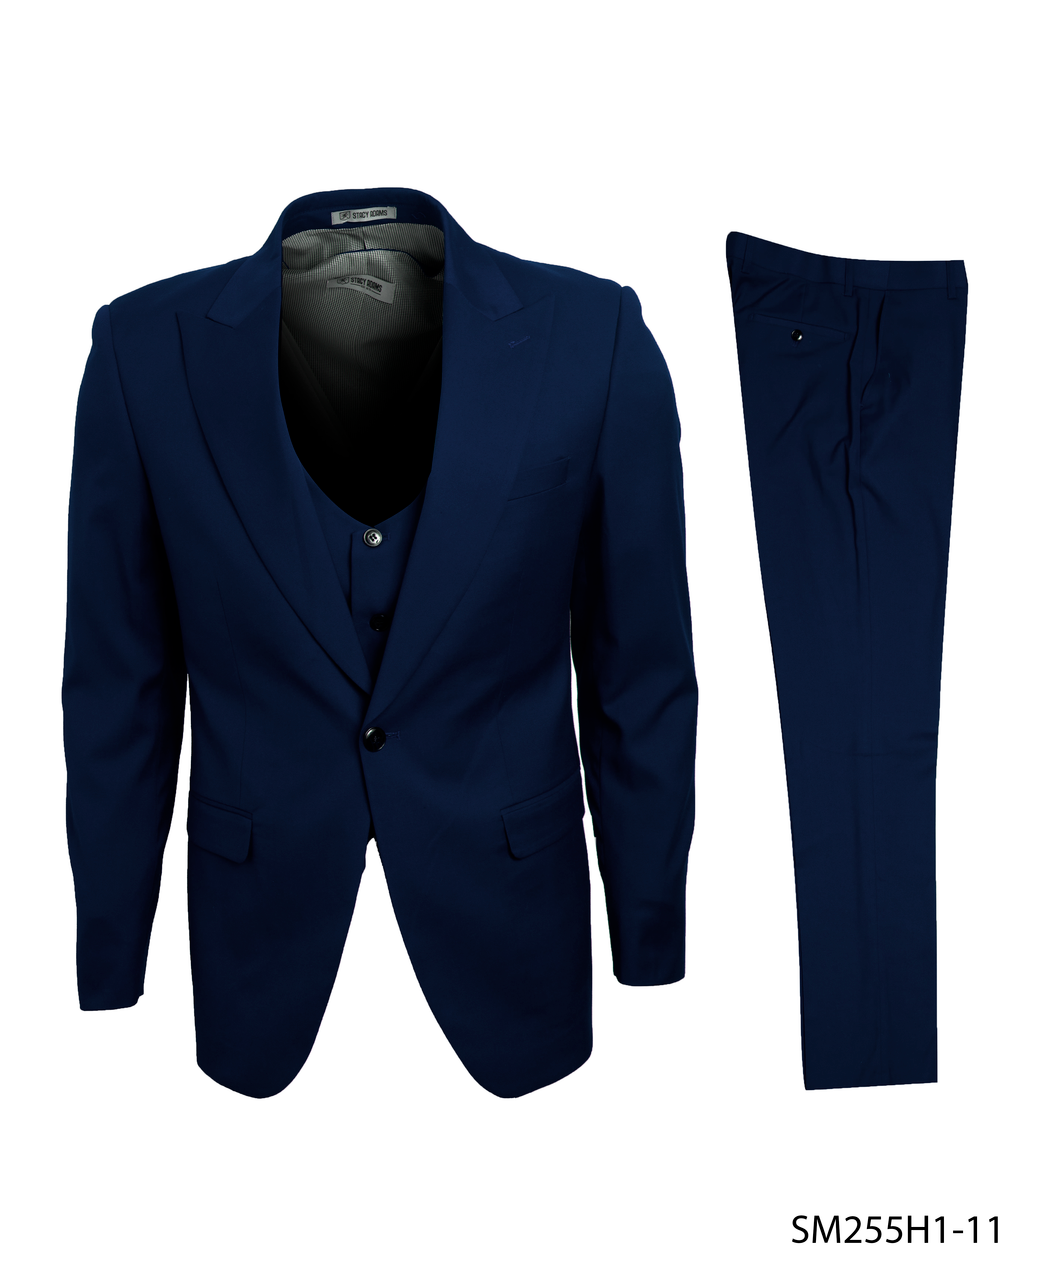 Stacy Adams Fashion Suit 3 Piece Navy Blue Peak Lapel Low Cut Vest SM255H-11